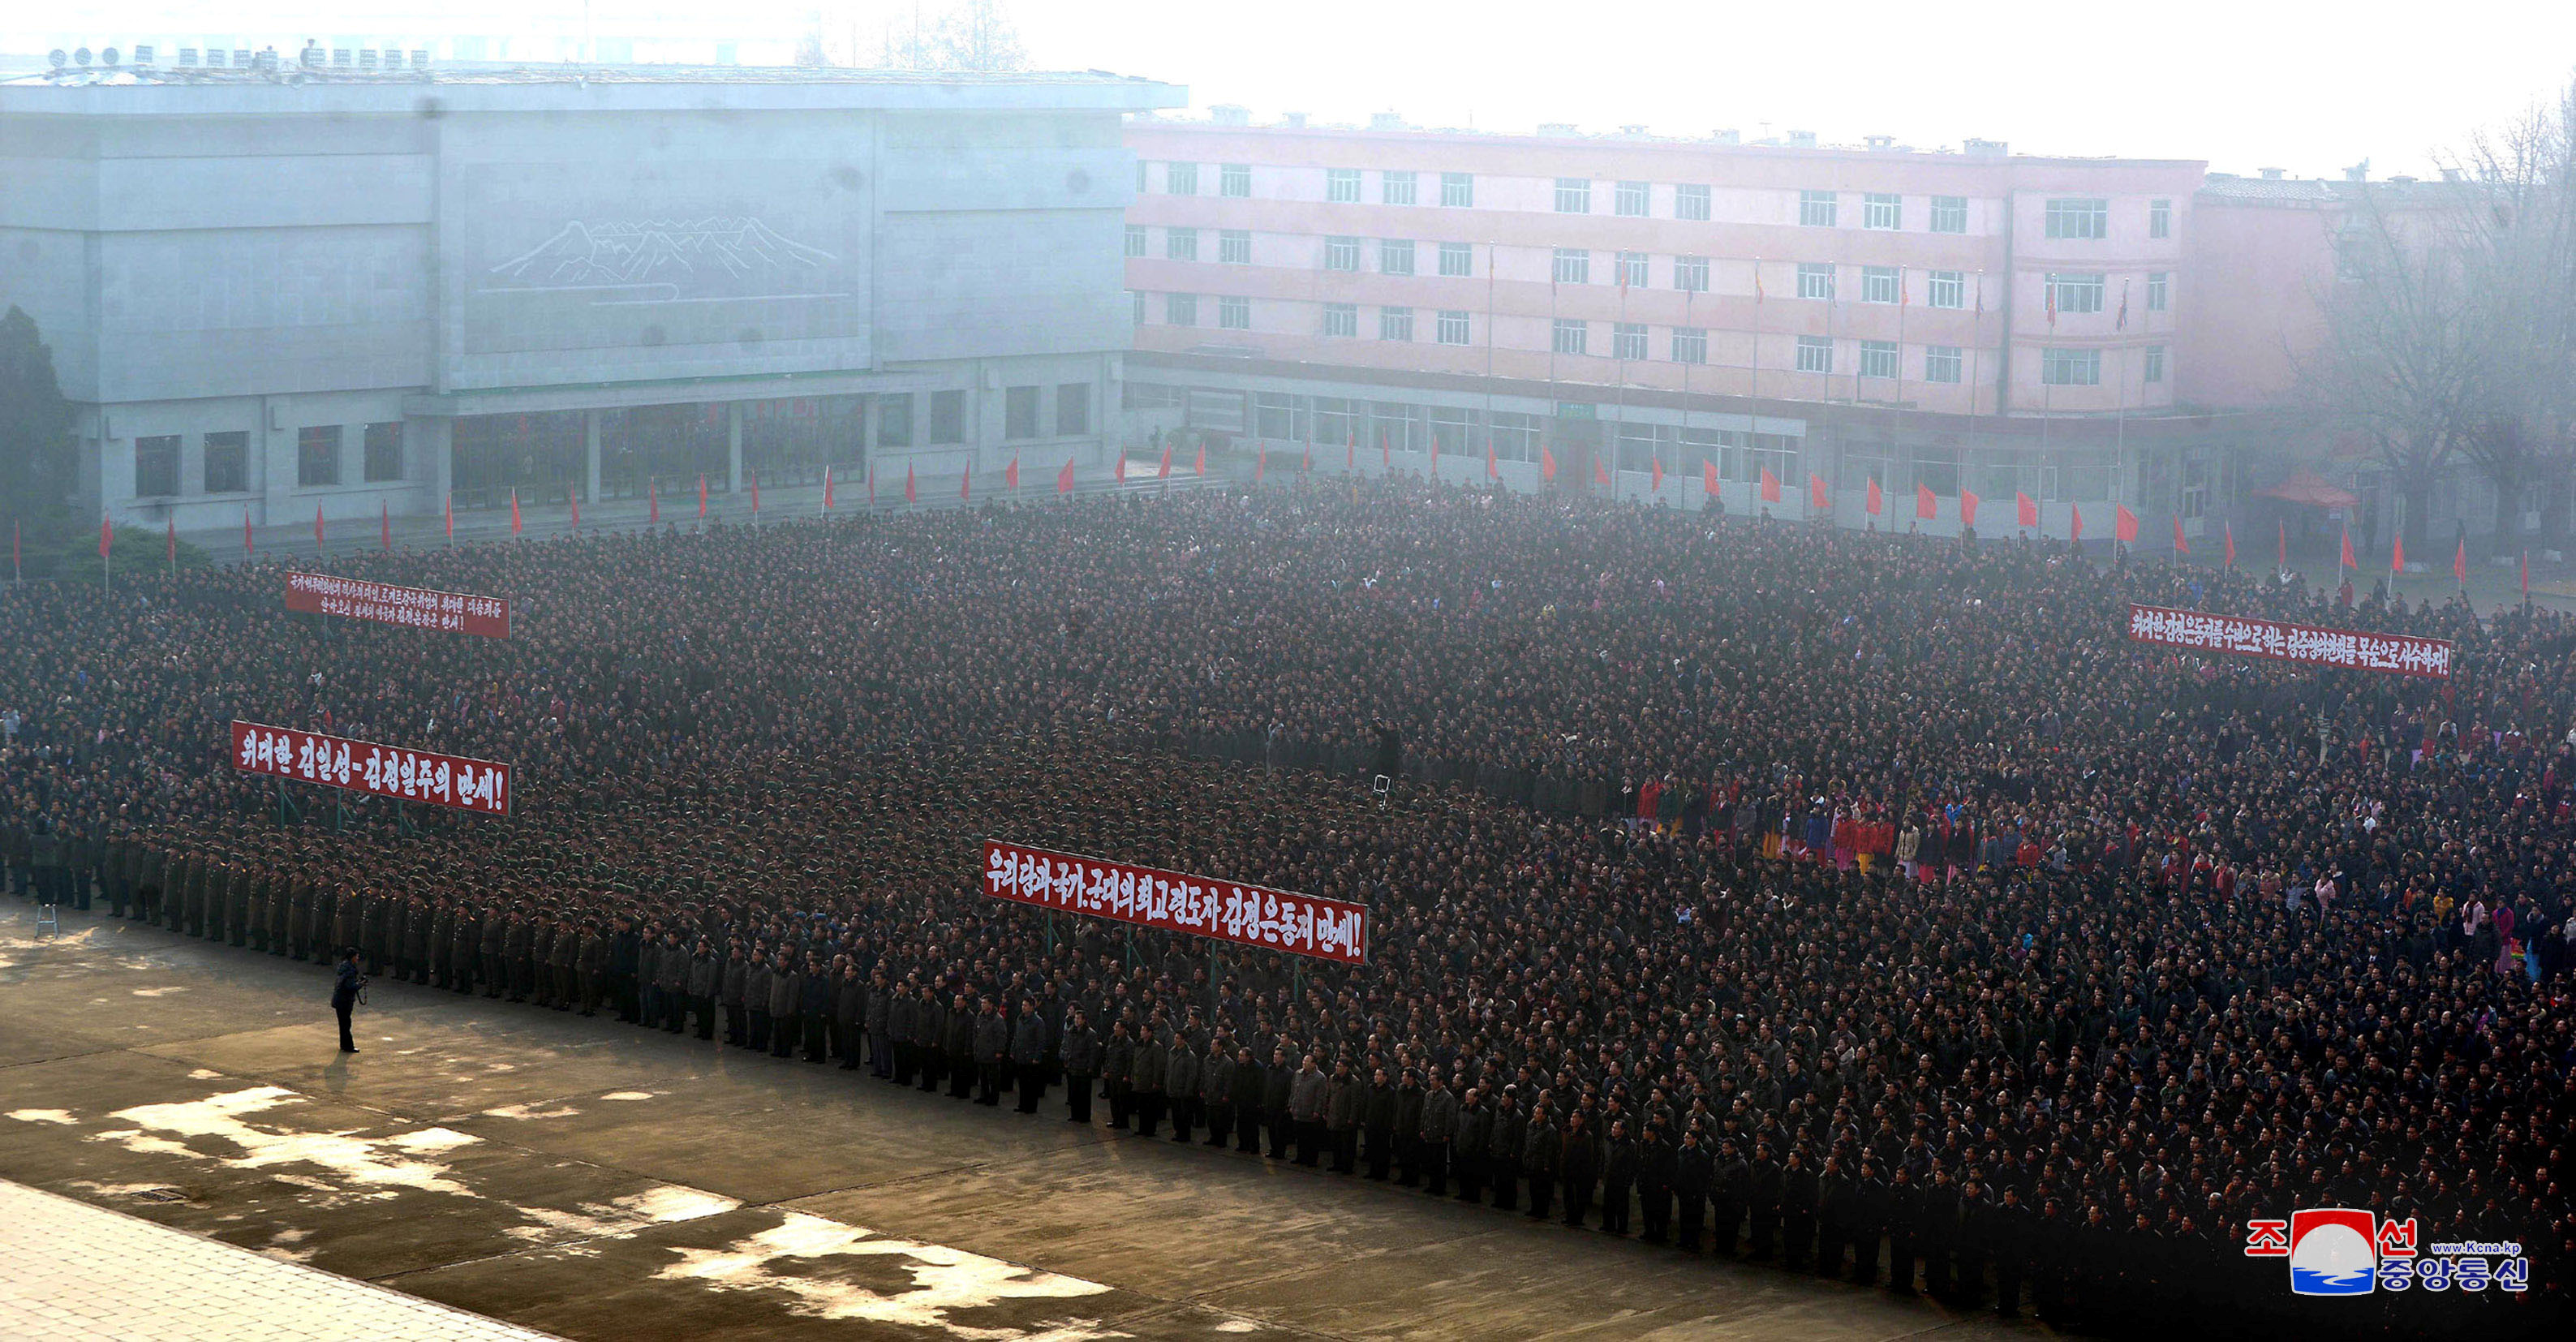 احتفالات حاشدة فى كوريا الشمالية بعد نجاح التجربة الصاروخية